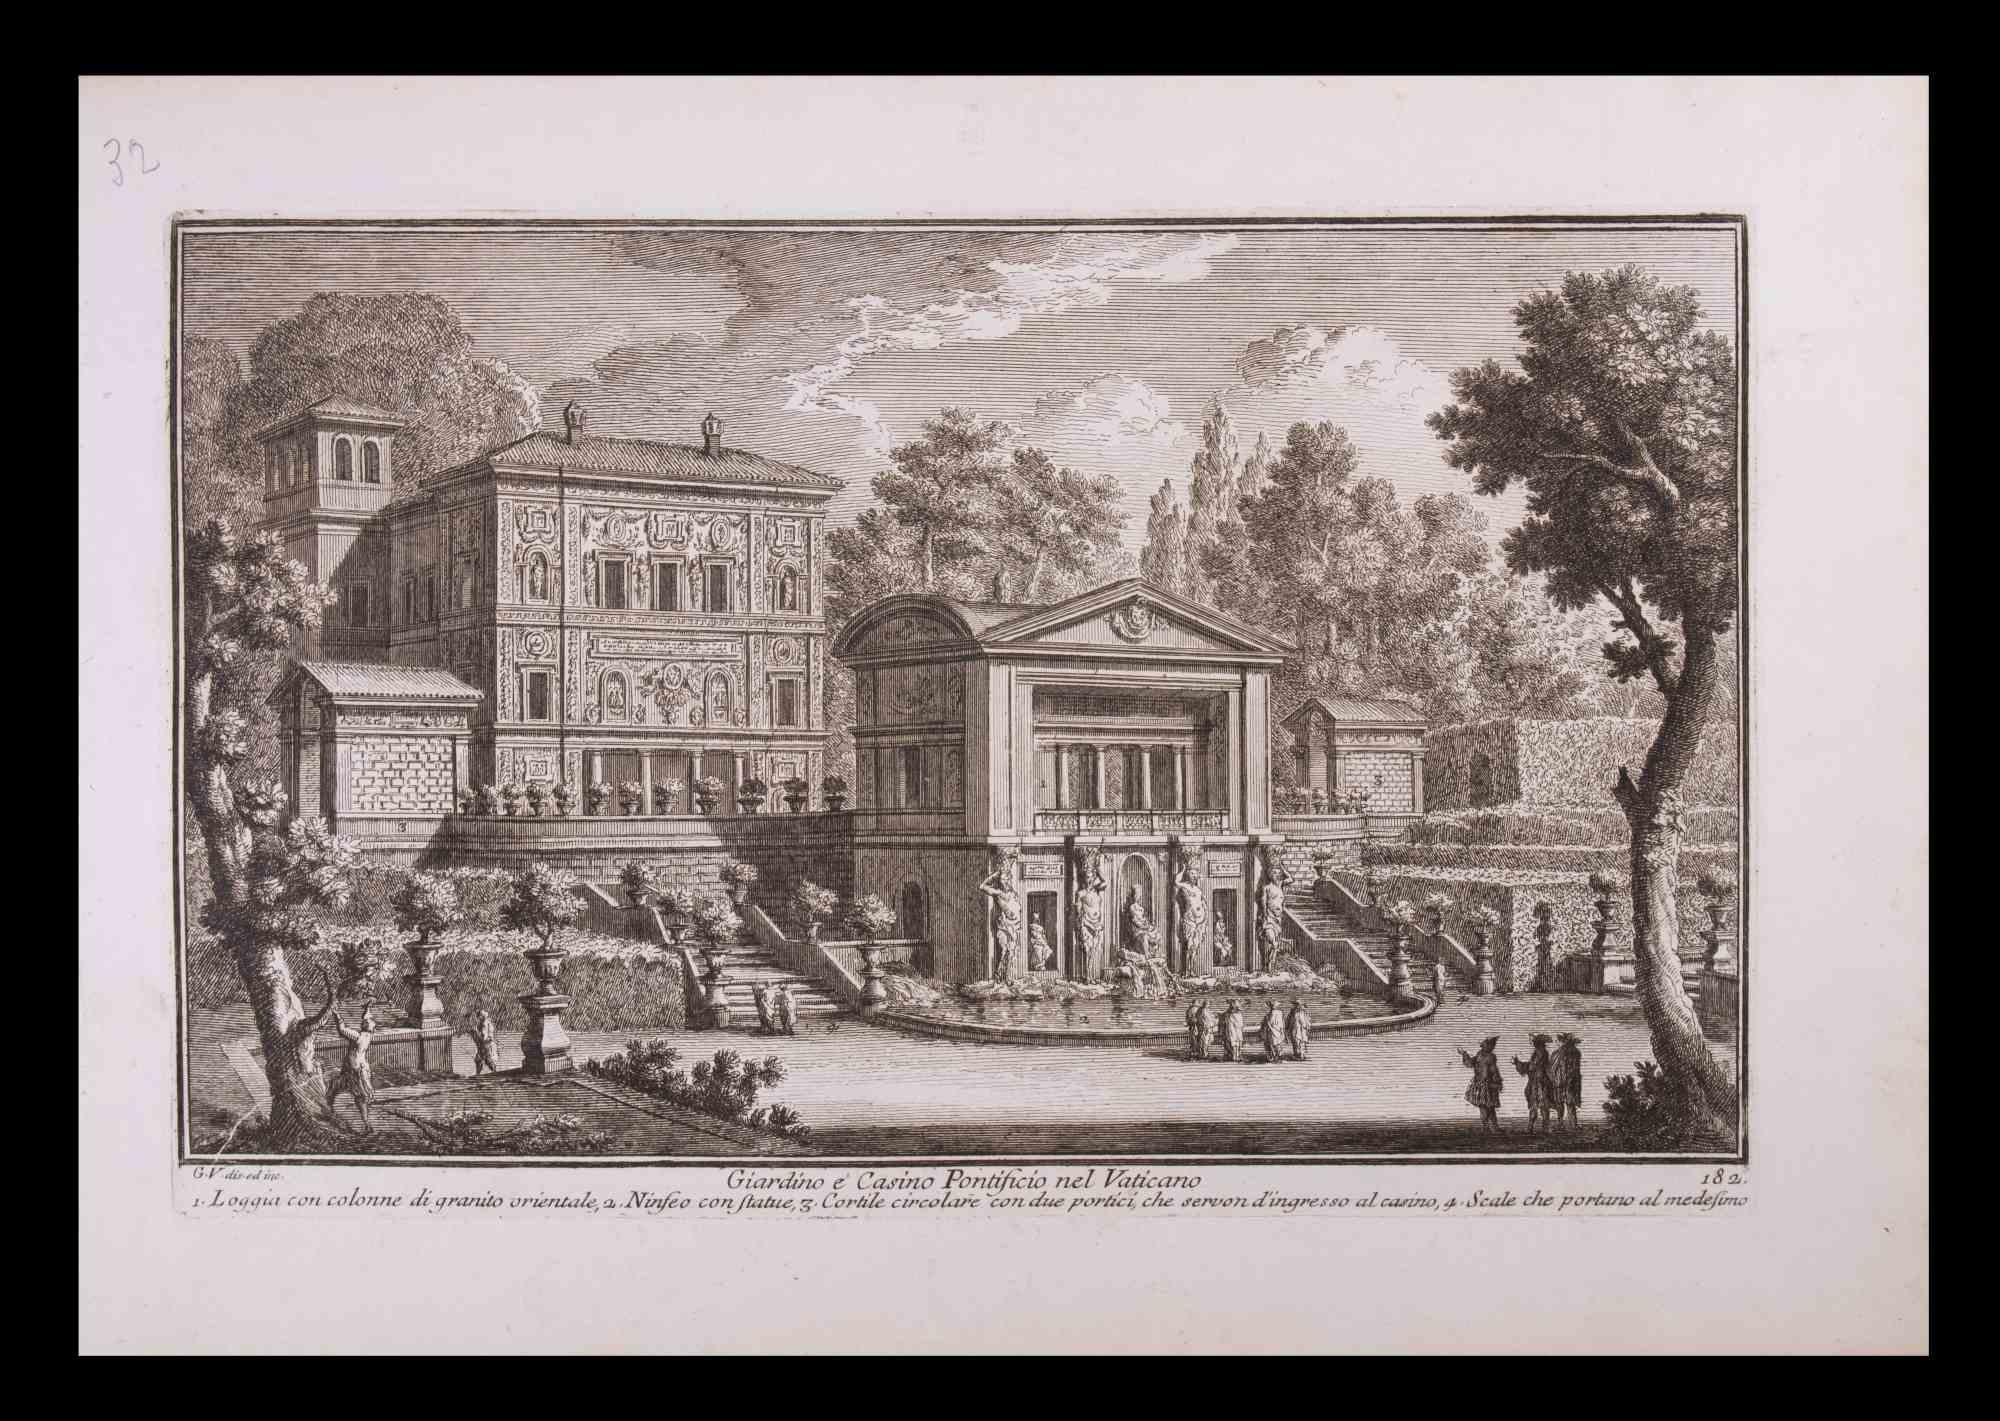 Giardino e Casino Pontificio - gravure de Giuseppe Vasi - fin du 18ème siècle